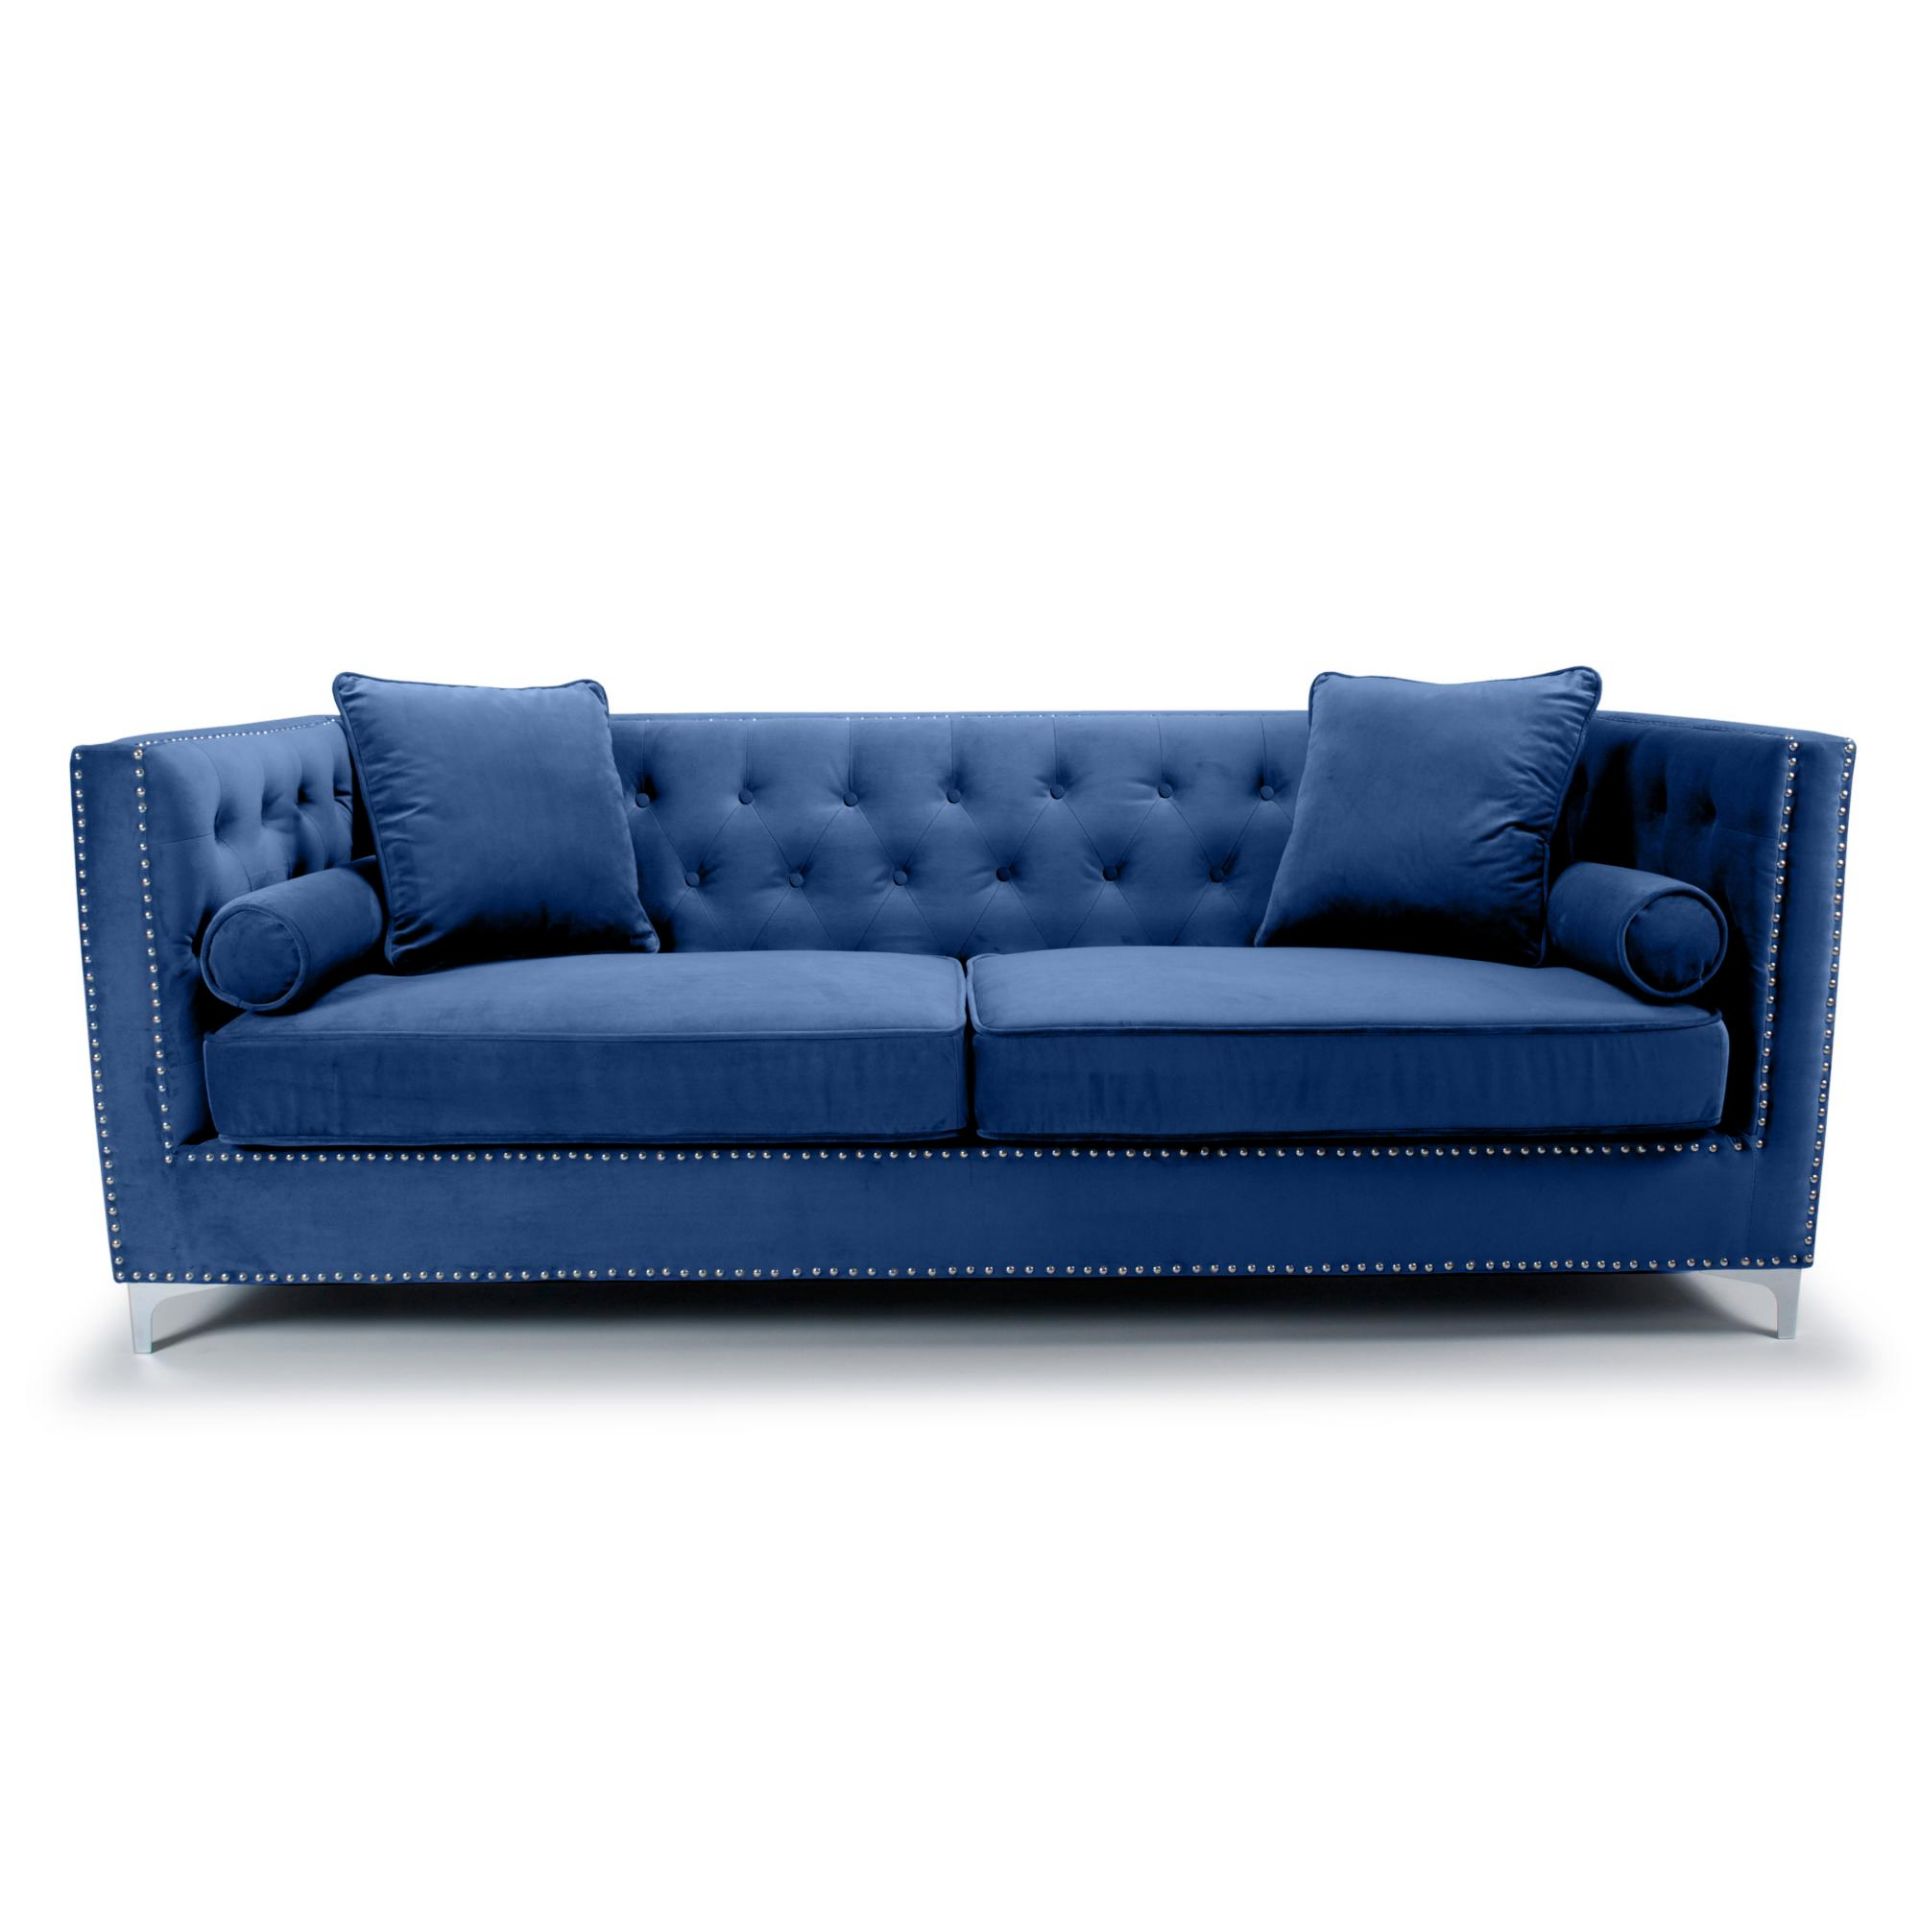 Sandringham Blue Velvet 4 Seater Sofa - Image 2 of 2